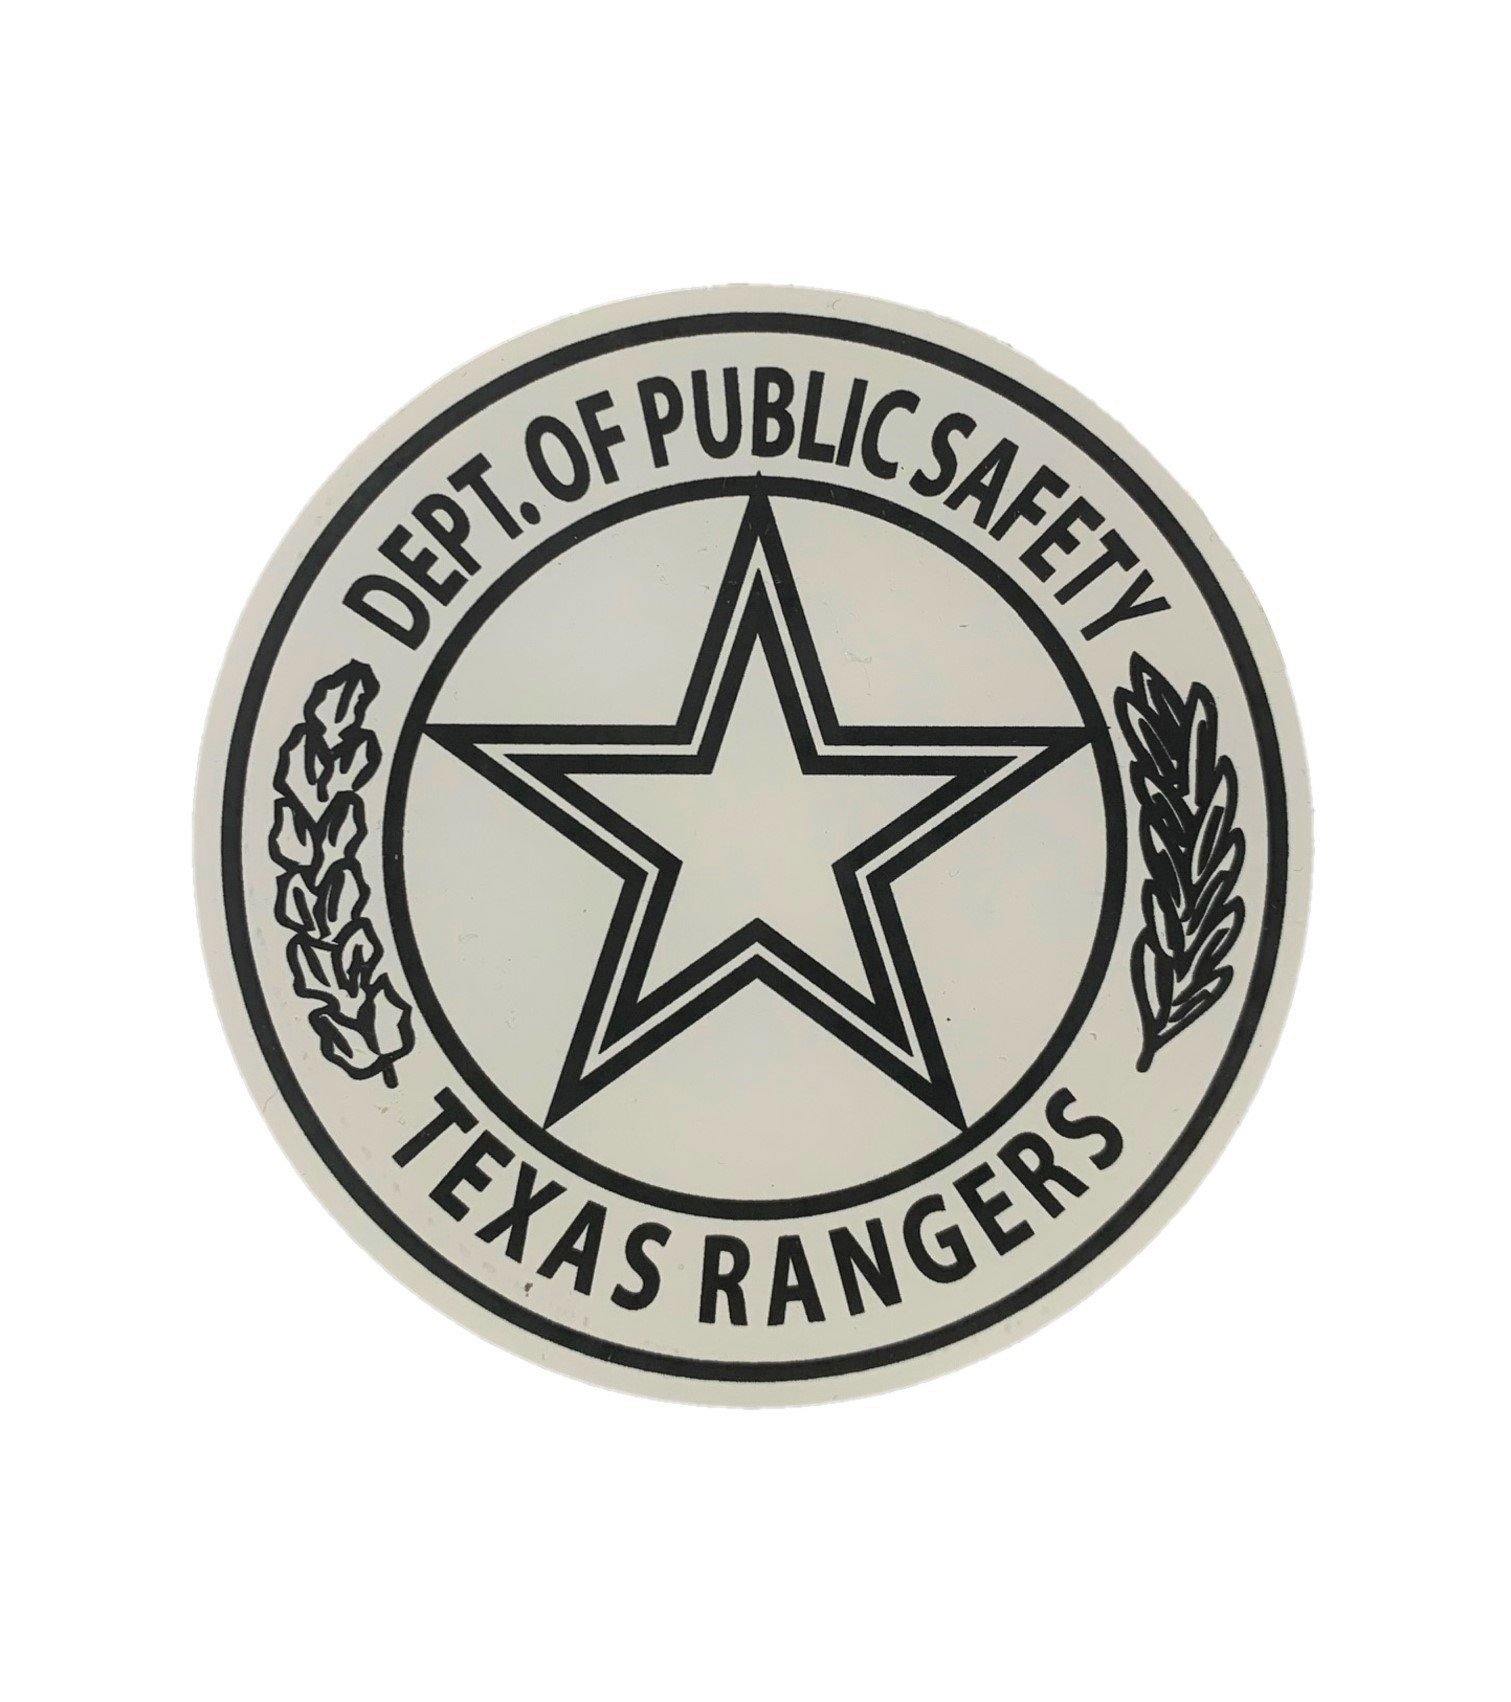 Texas Rangers Auto Emblem Color